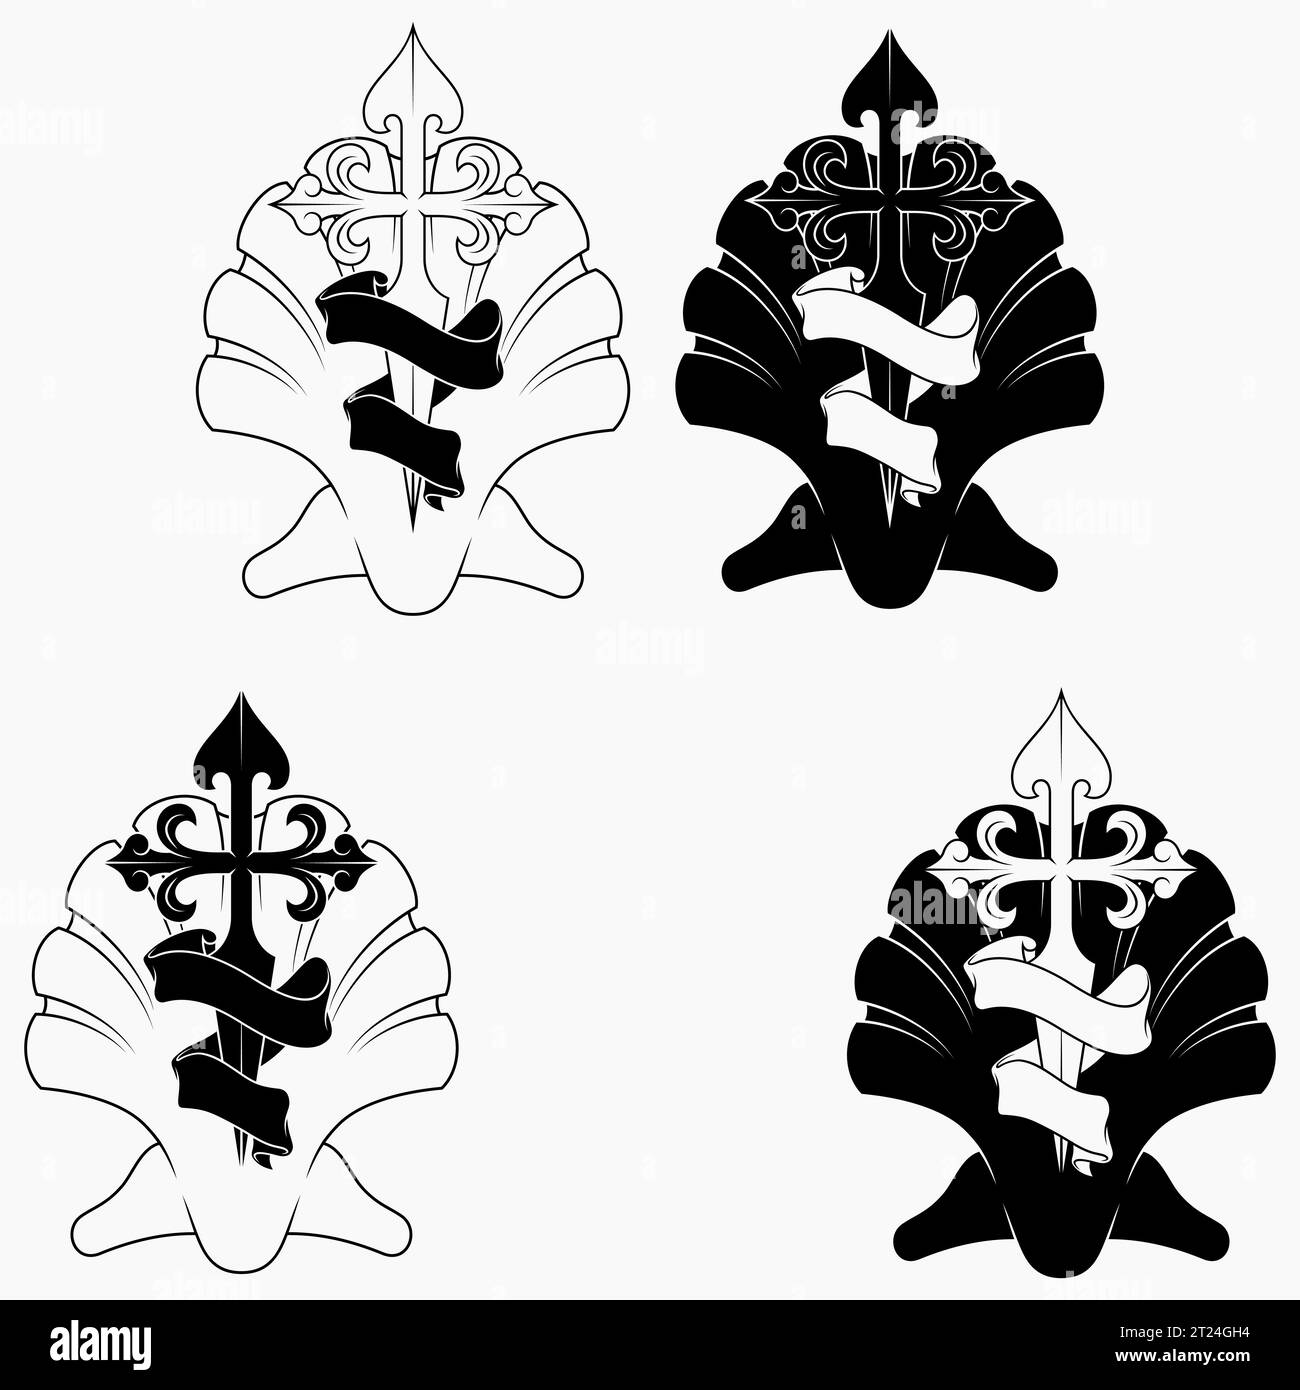 Disegno vettoriale della simbologia cristiana dell'apostolo santiago, croce dell'apostolo Santiago con impiallacciatura e nastro Illustrazione Vettoriale